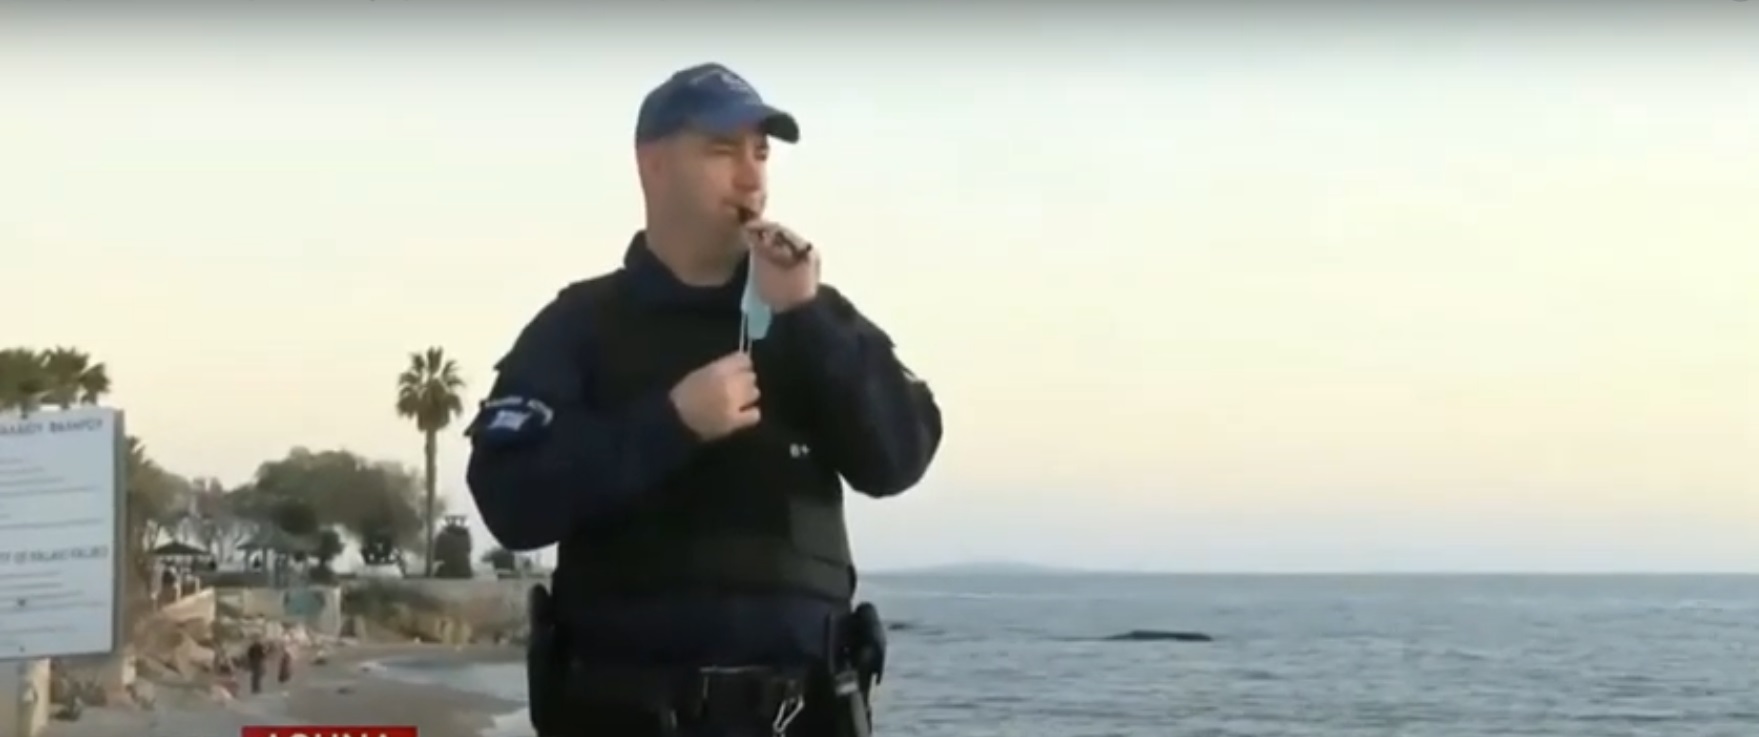 Σκηνές από το Σιδηρούν Παραπέτασμα στην Ελλάδα του 2021: Αστυνομικοί σφυρίζουν και οι πολίτες εκκενώνουν! (βίντεο)